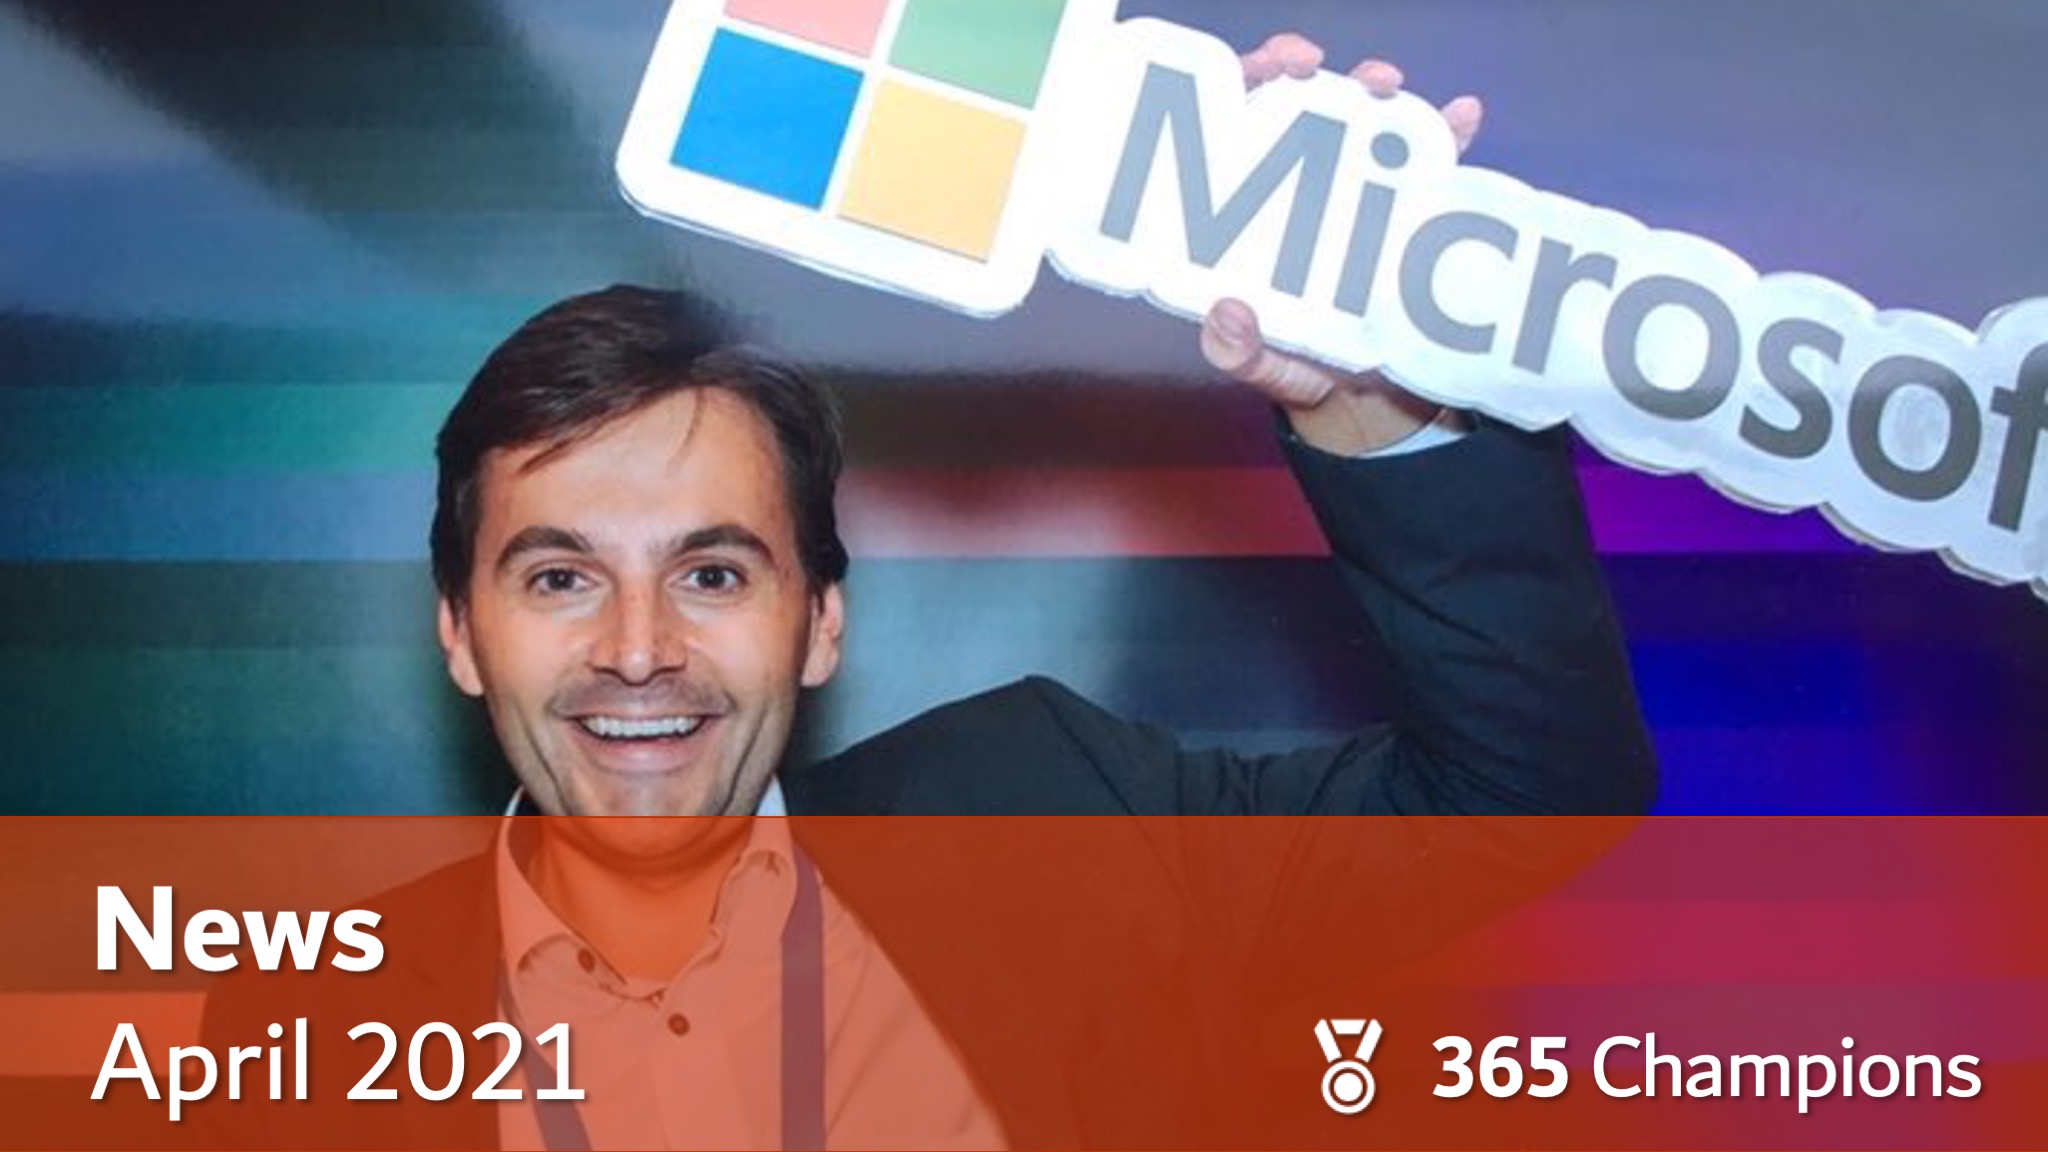 Thomas Maier hebt den Schriftzug und das Logo von Microsoft nach oben. Bild zeigt den Text "News April 2021" und das Logo des 365 Champions Teams.